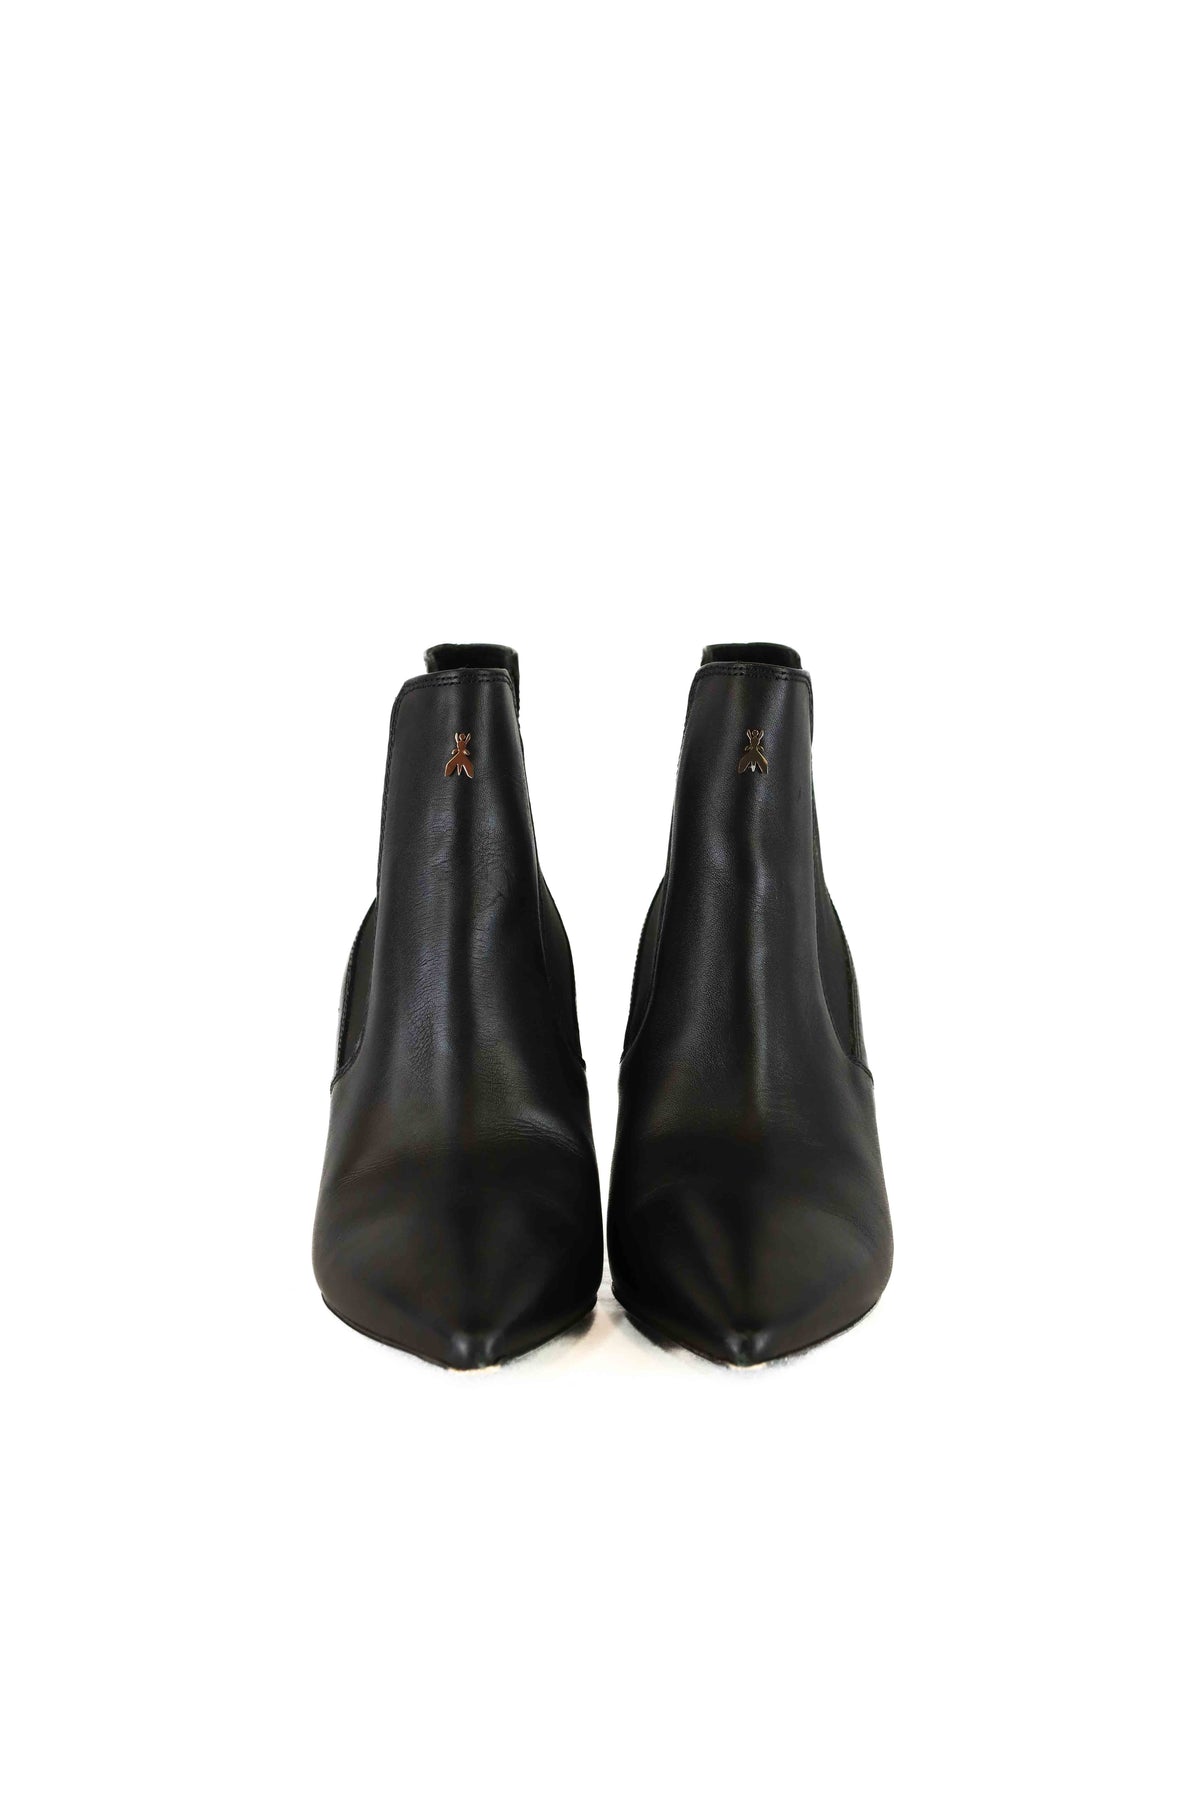 Patrizia Pepe Black Ankle Boots AU/US 6 (EU 37)